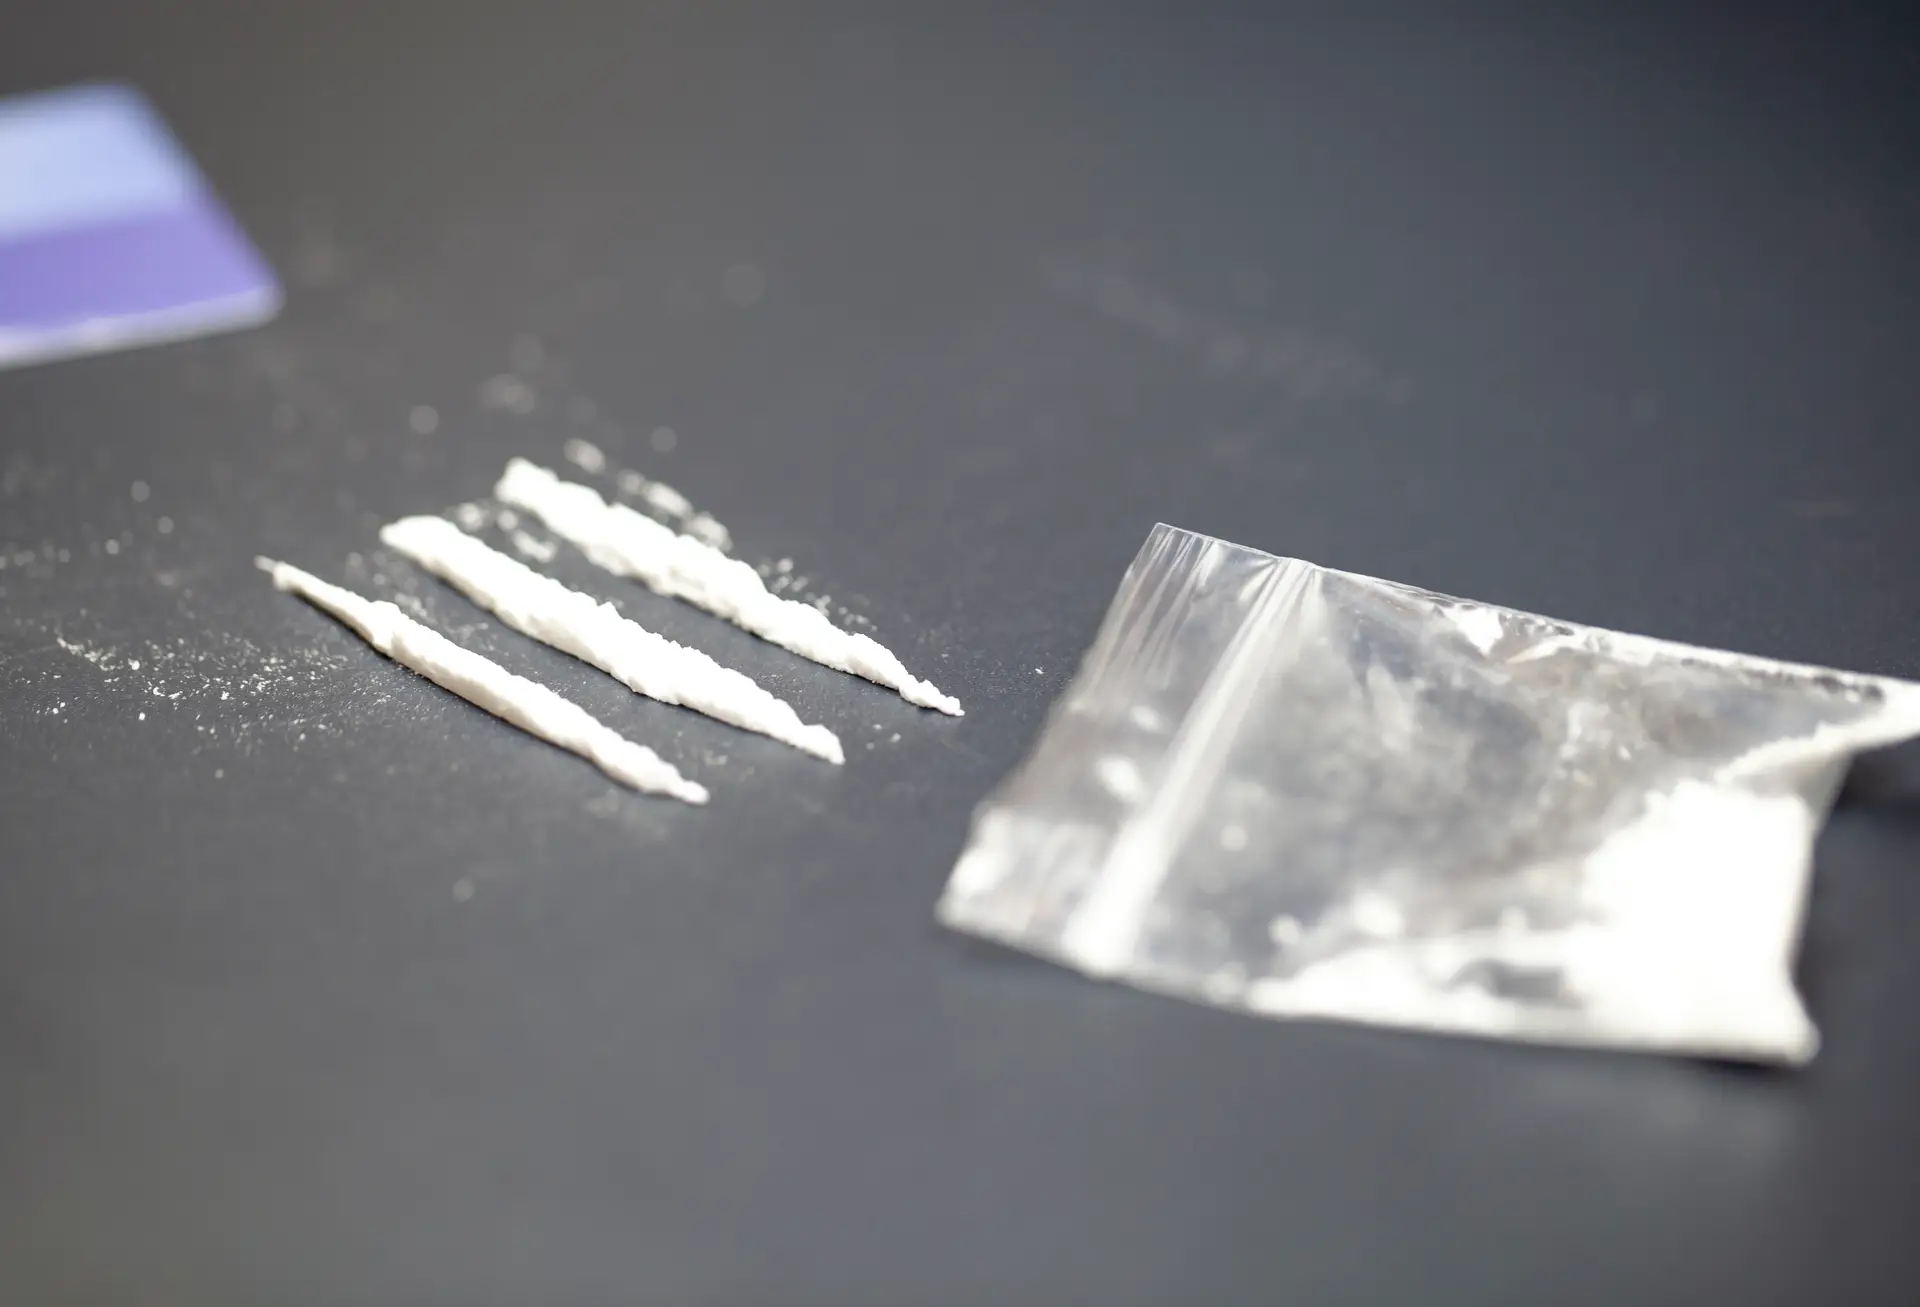 Tráfico de cocaína: rival de “Xuxas” desaparecido há dez meses foi preso pela PJ numa casa de recuo. Tinha uma Uzi com ele